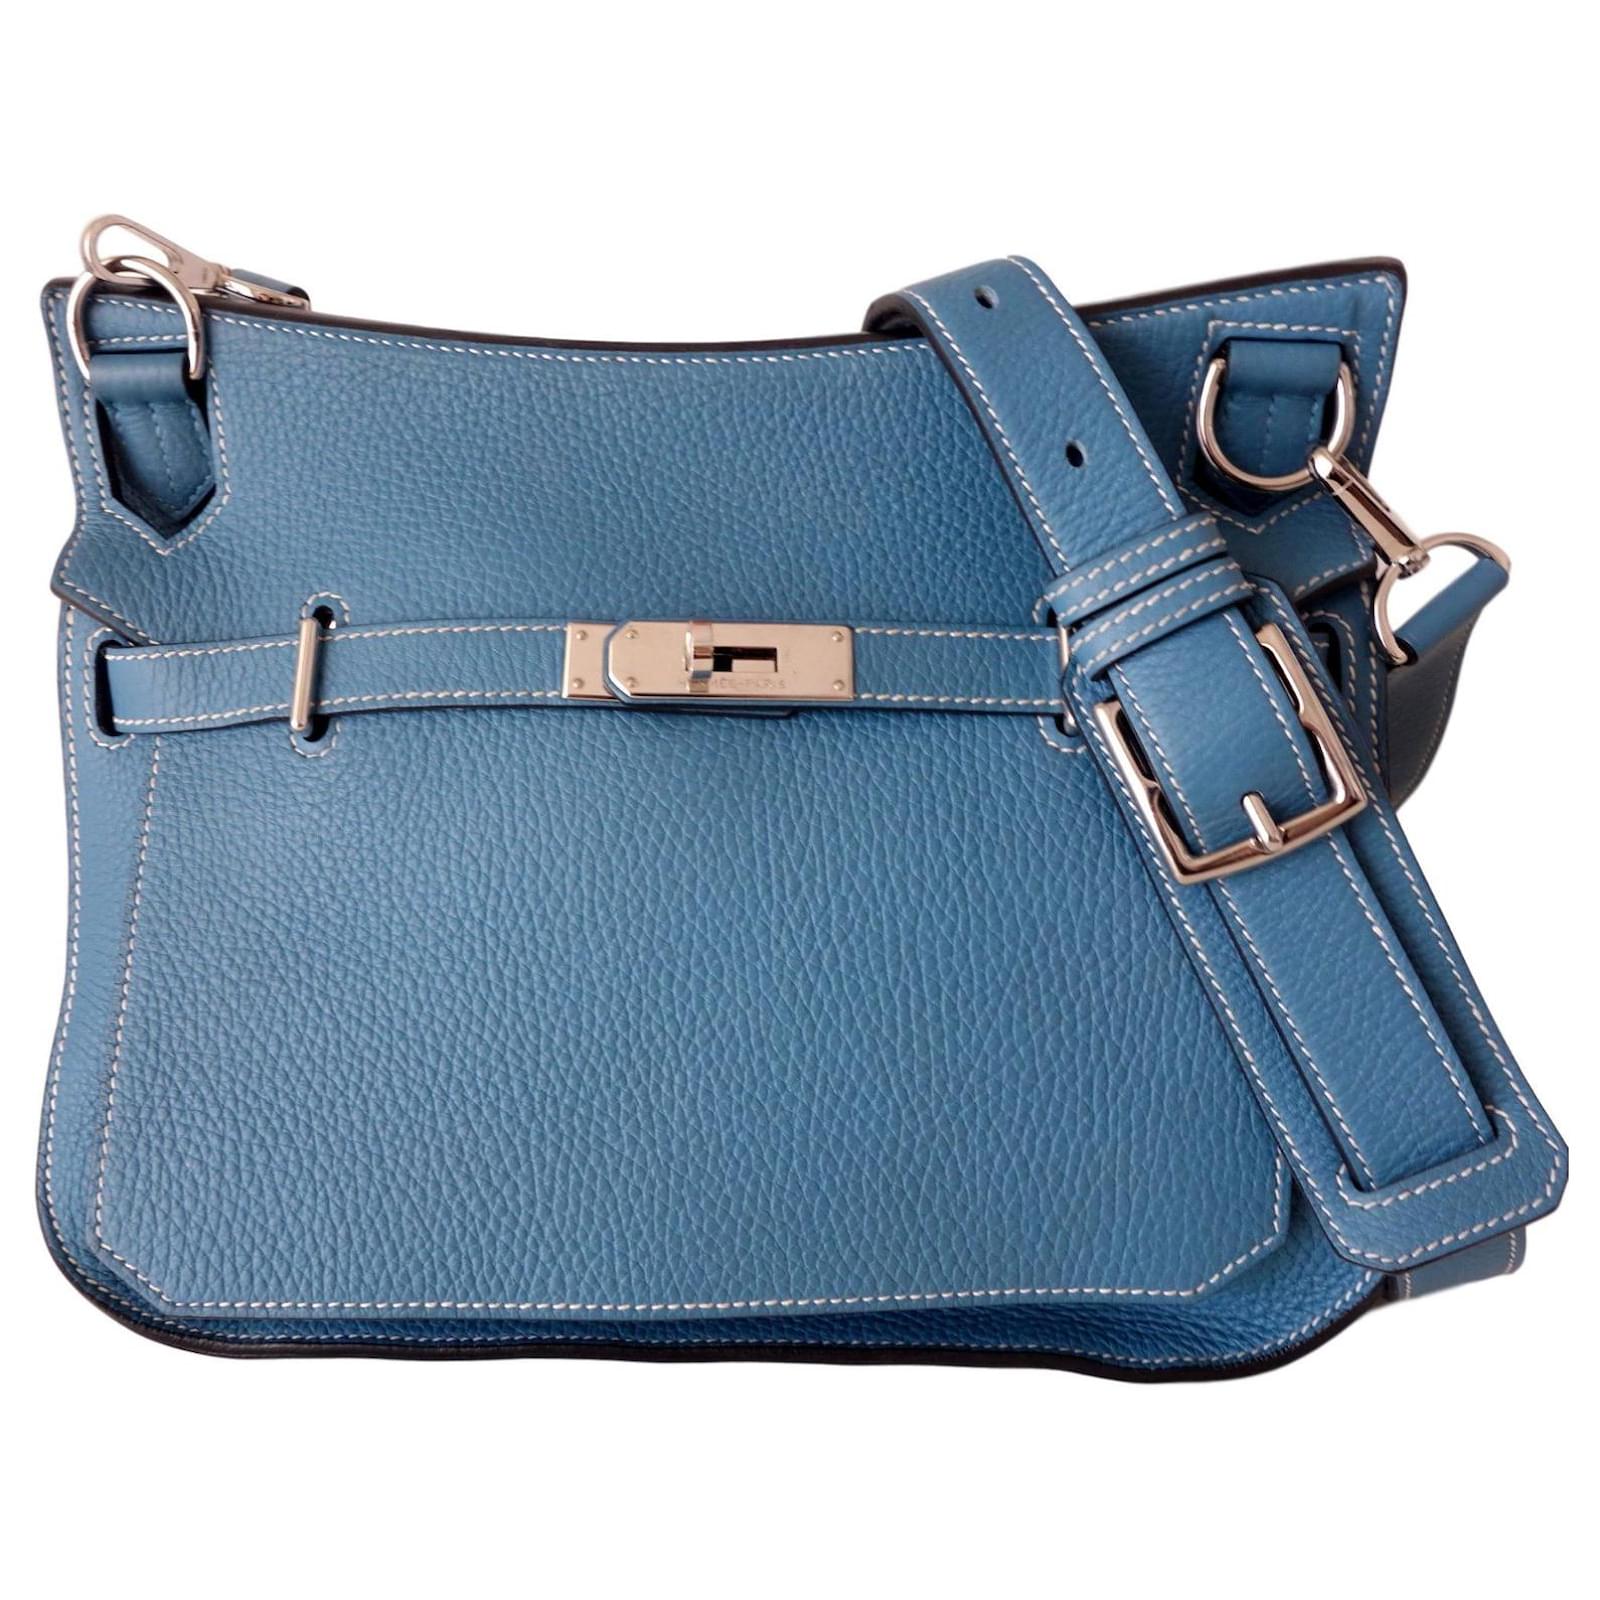 Hermes Jypsiere bag 28 Handbags Leather 